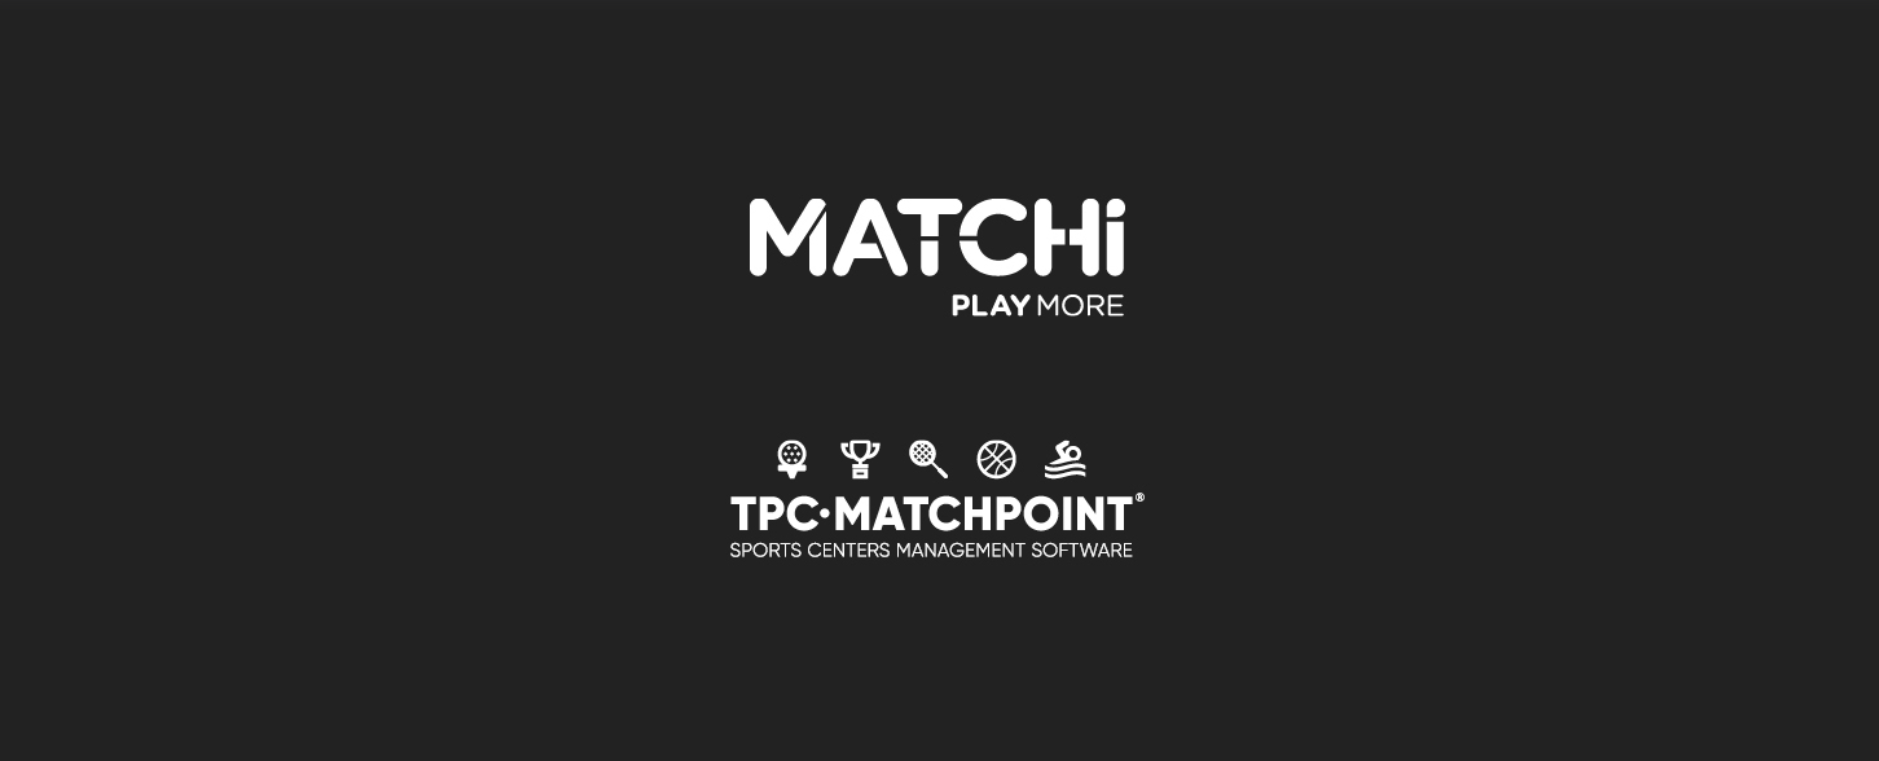 ¡TPC Matchpoint se asocia con MATCHi, creando una de las redes de deportes de raqueta más grandes del mundo!